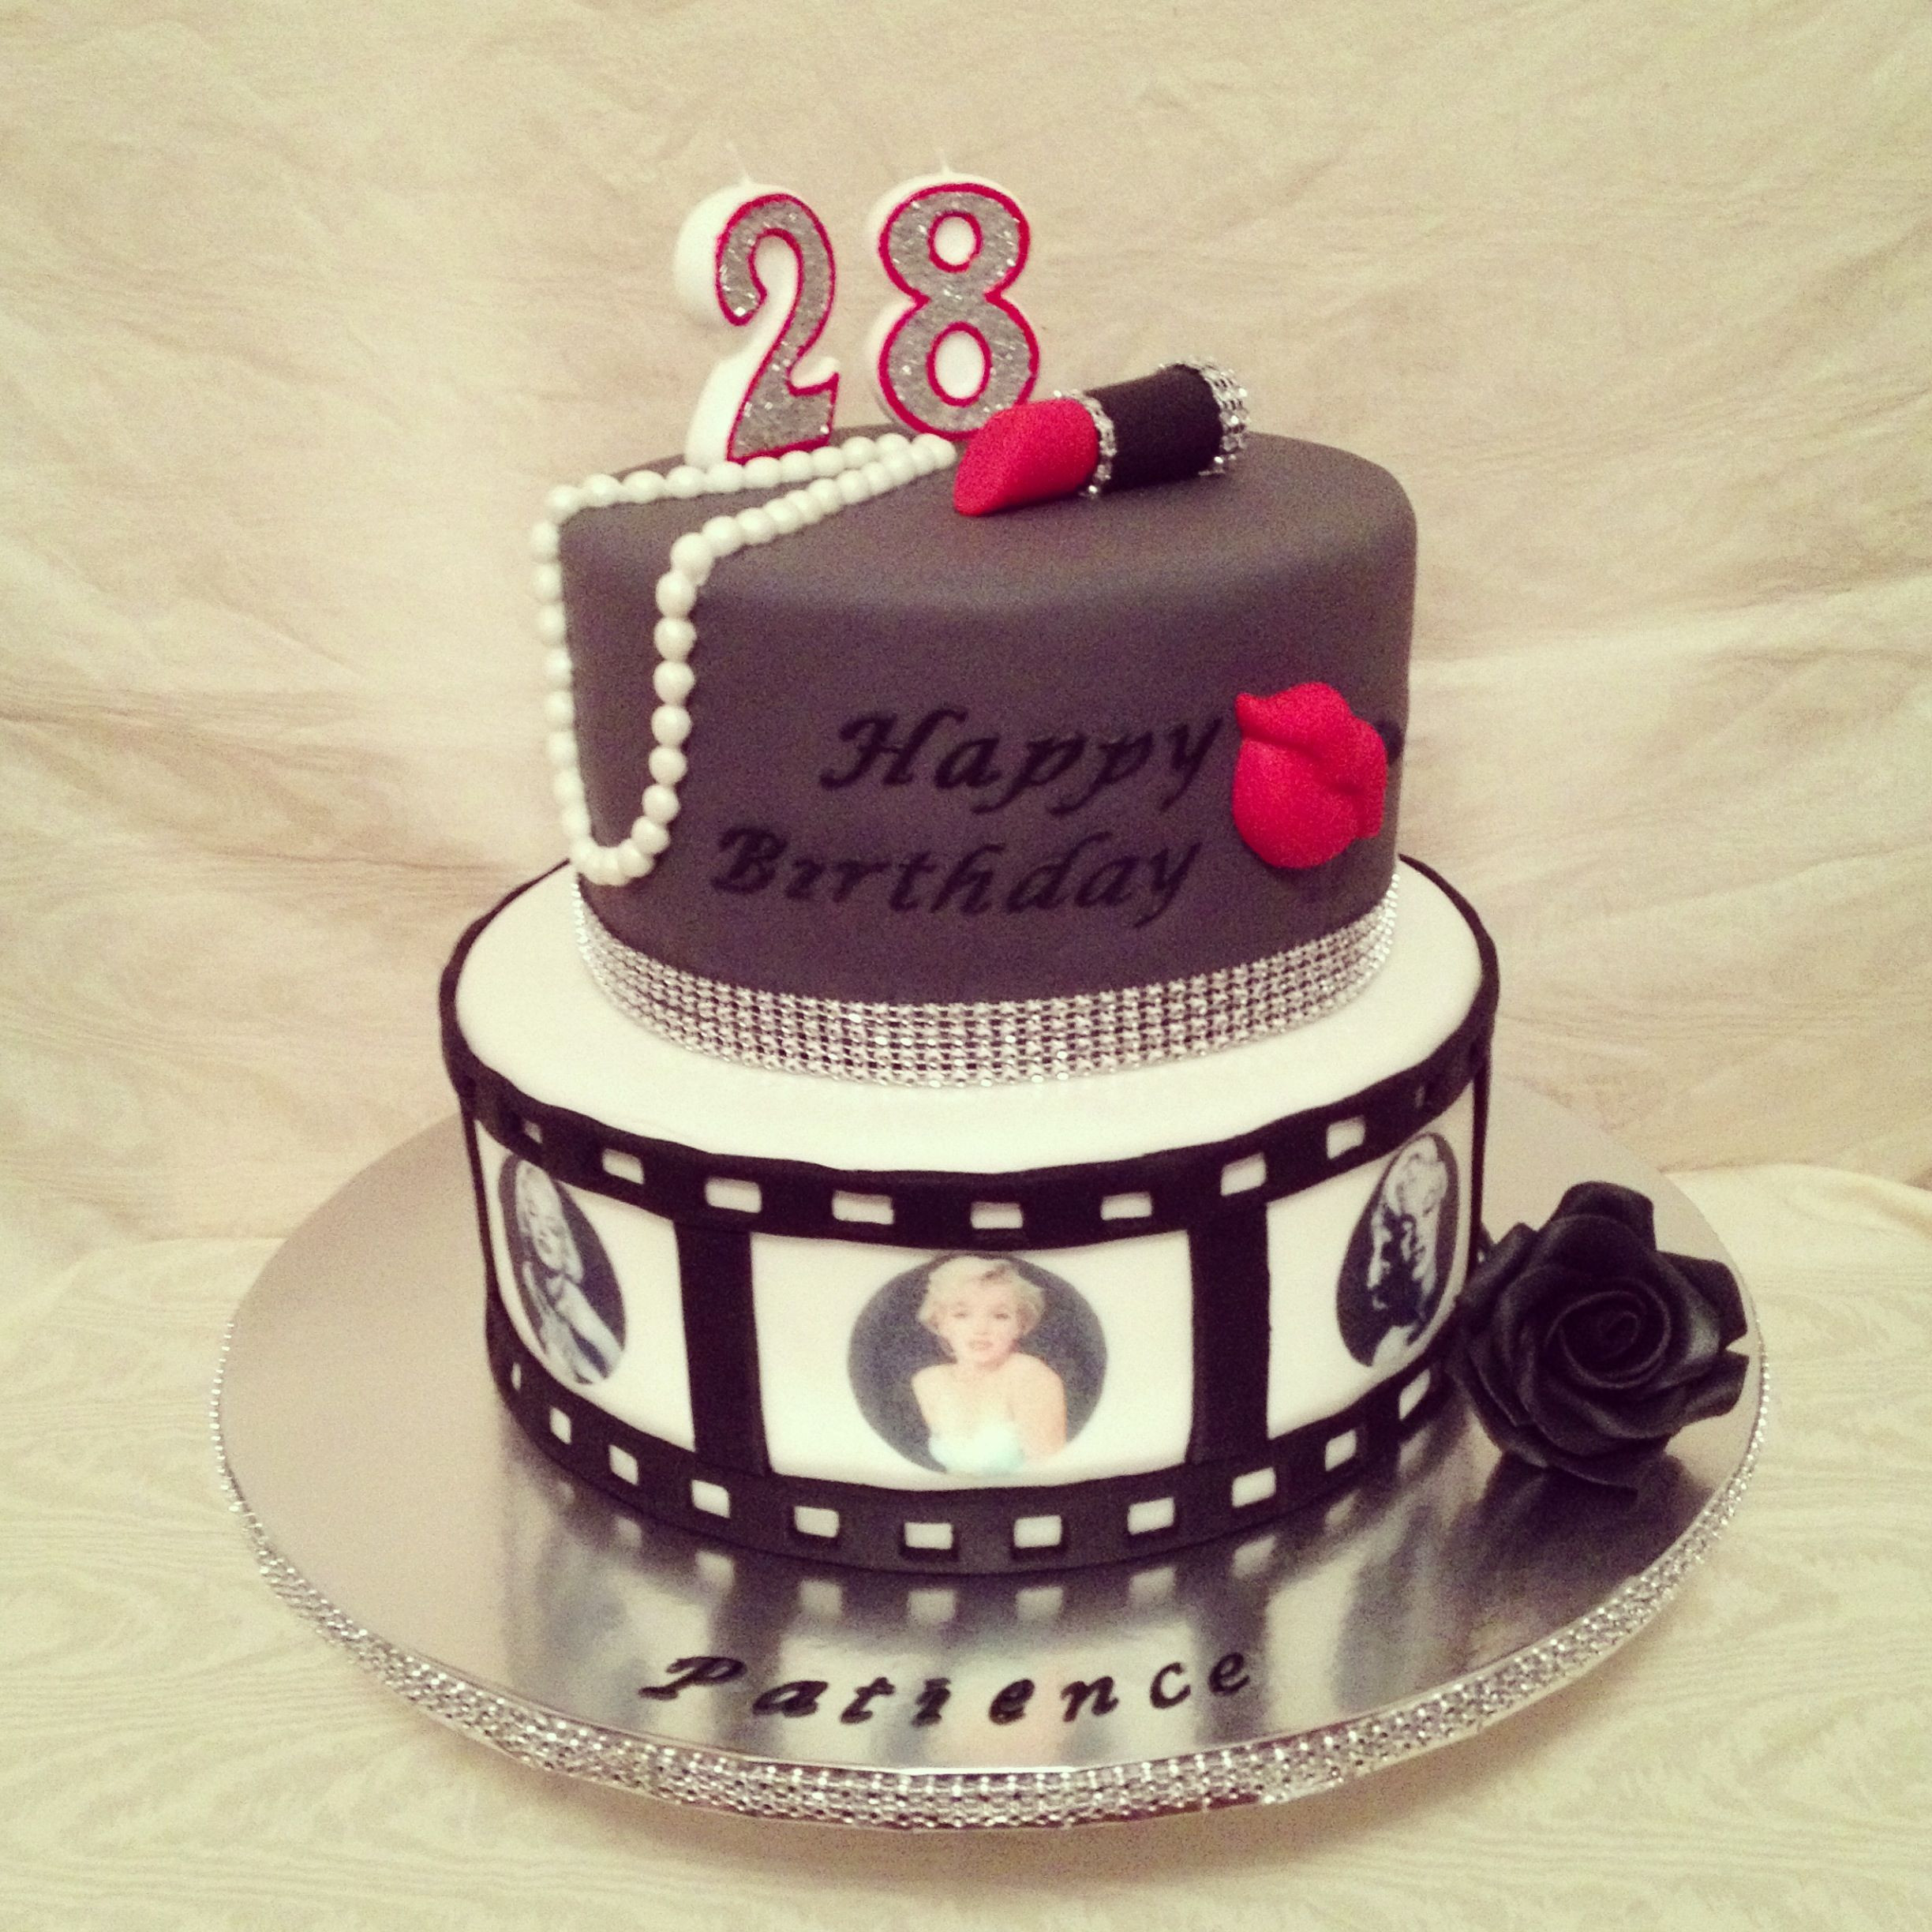 Geburtstagswünsche Kuchen
 Marilyn Monroe cake 6 13